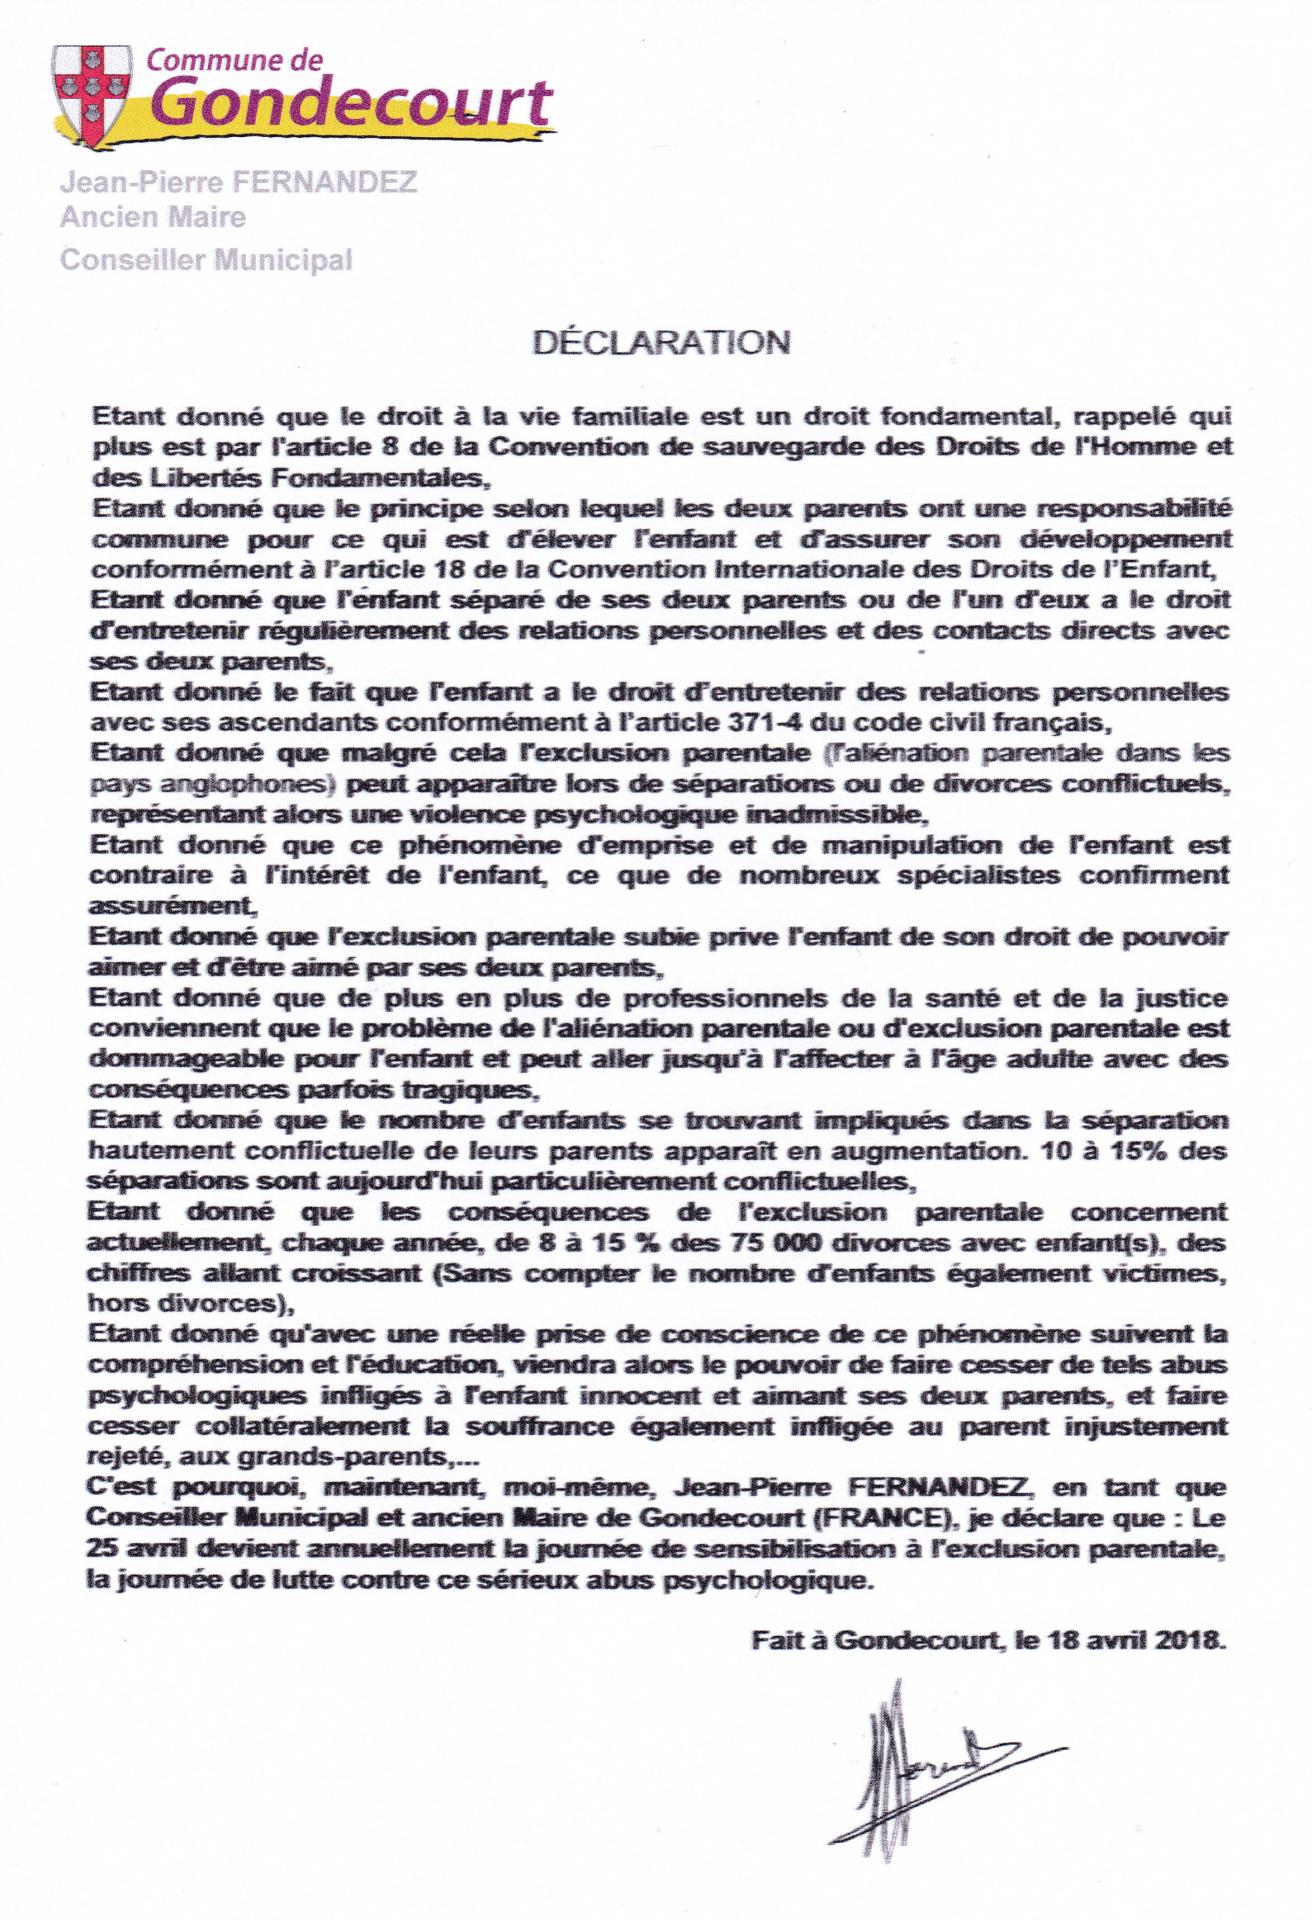 Declaration gondecourt